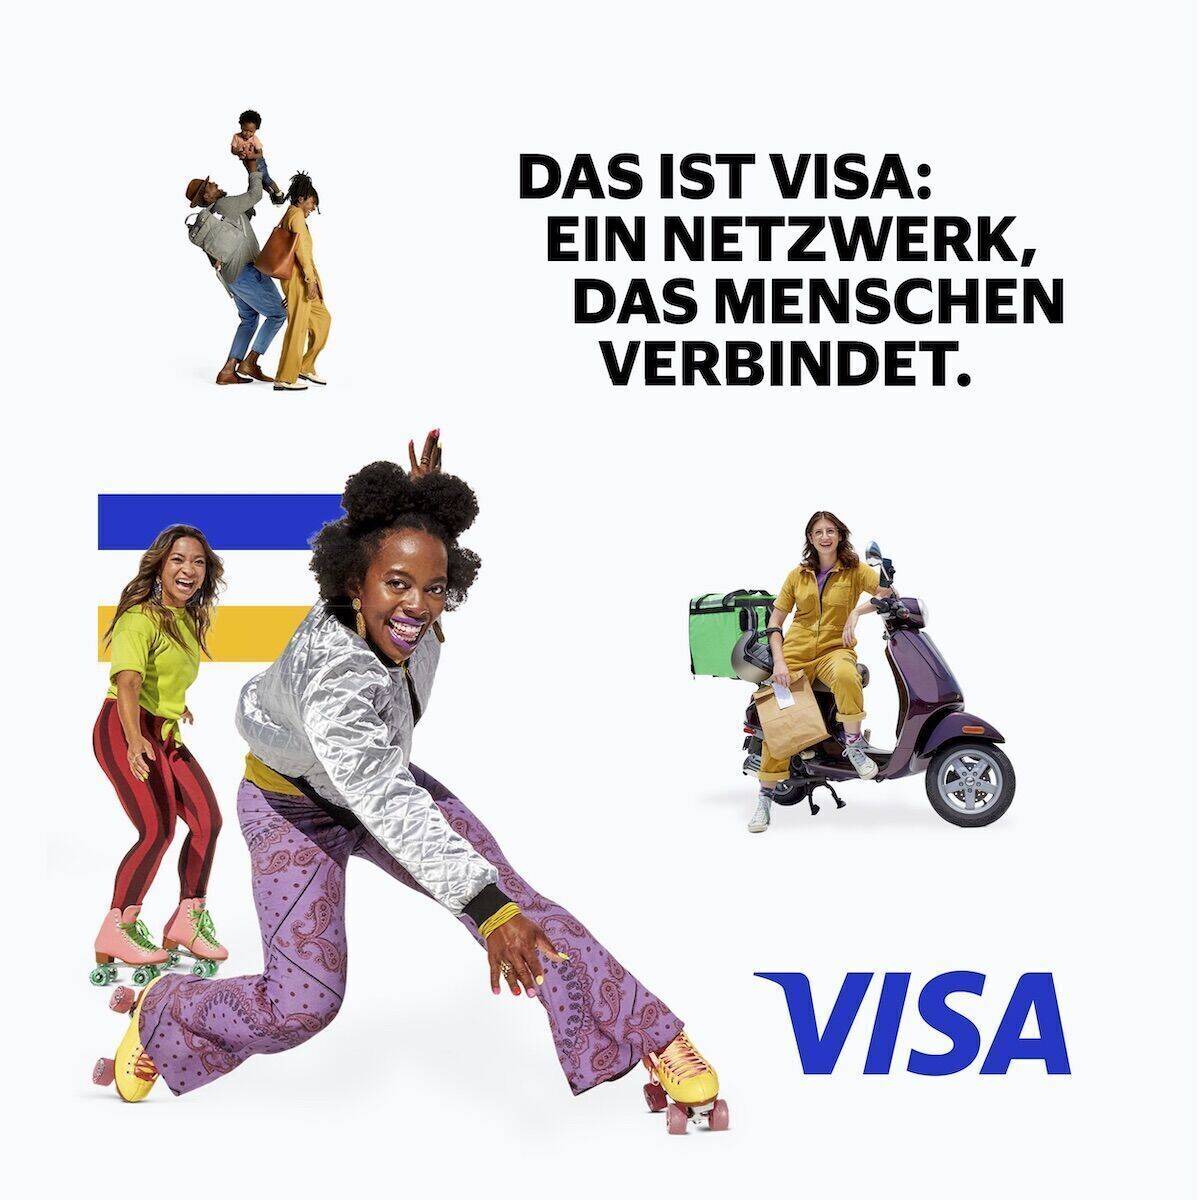 Die neue Visual Identity von Visa setzt voll auf Diversity.